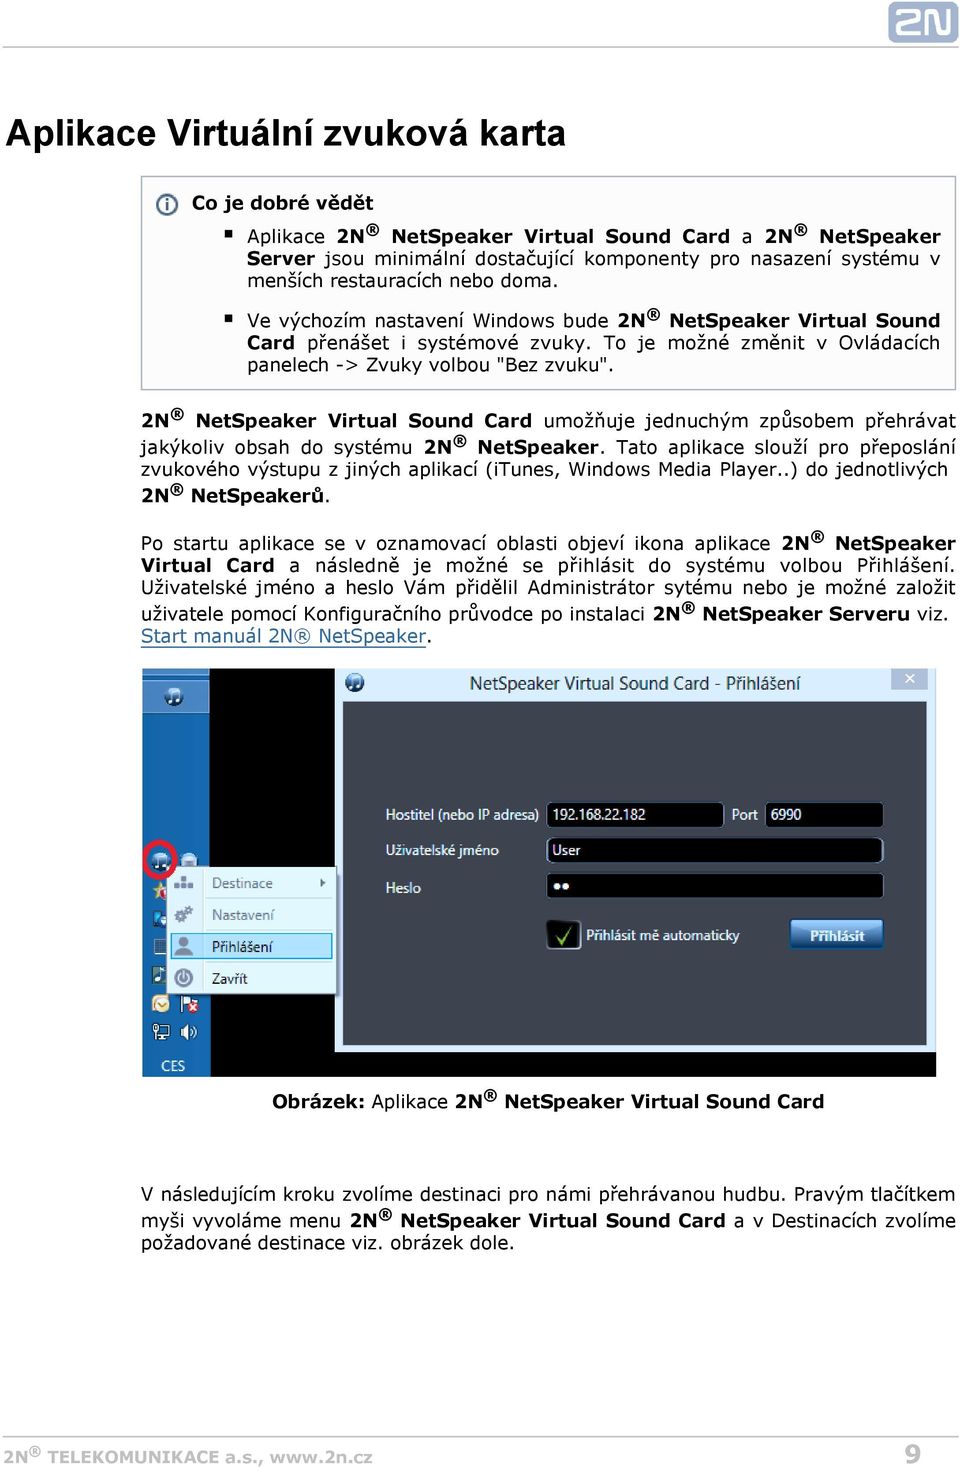 2N NetSpeaker Virtual Sound Card umožňuje jednuchým způsobem přehrávat jakýkoliv obsah do systému 2N NetSpeaker.